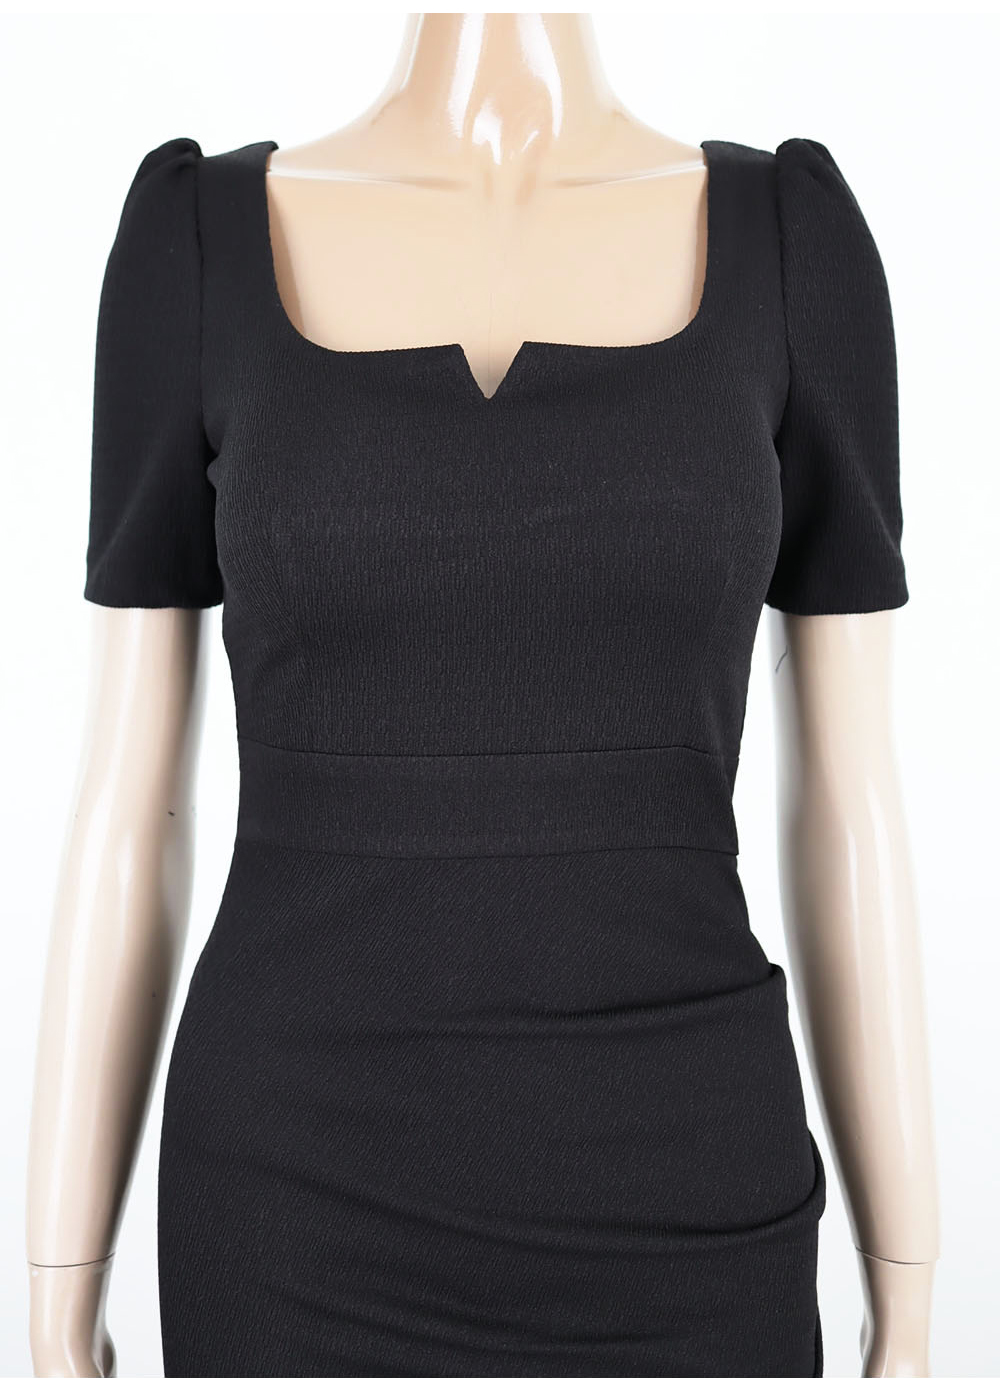 Elasticity T-back short sleeve dress for women